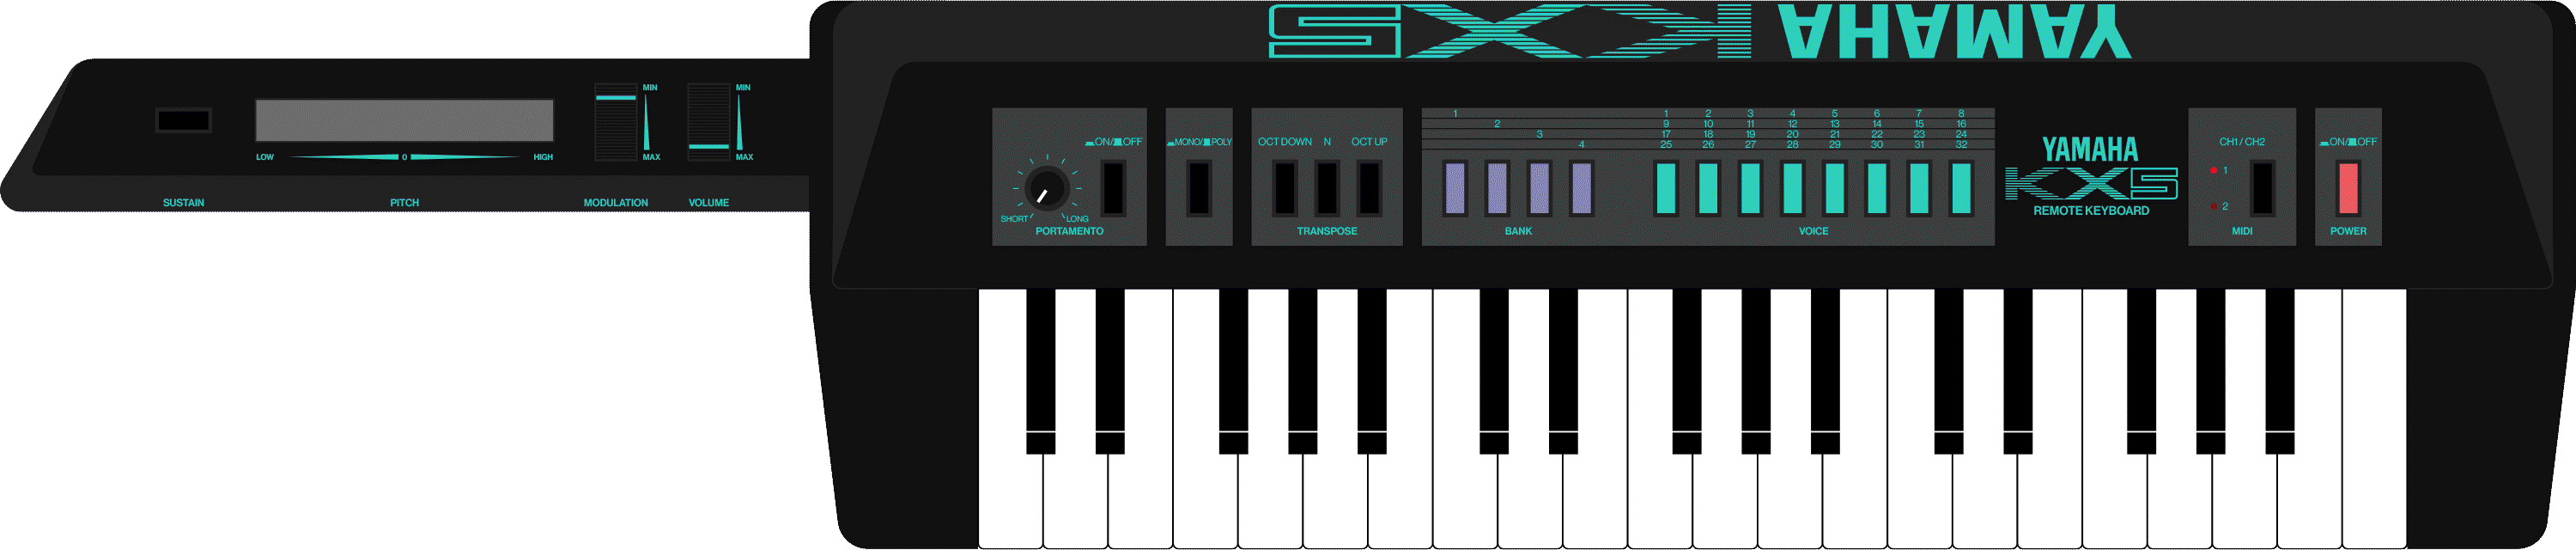 Yamaha KX5 MIDI keytar